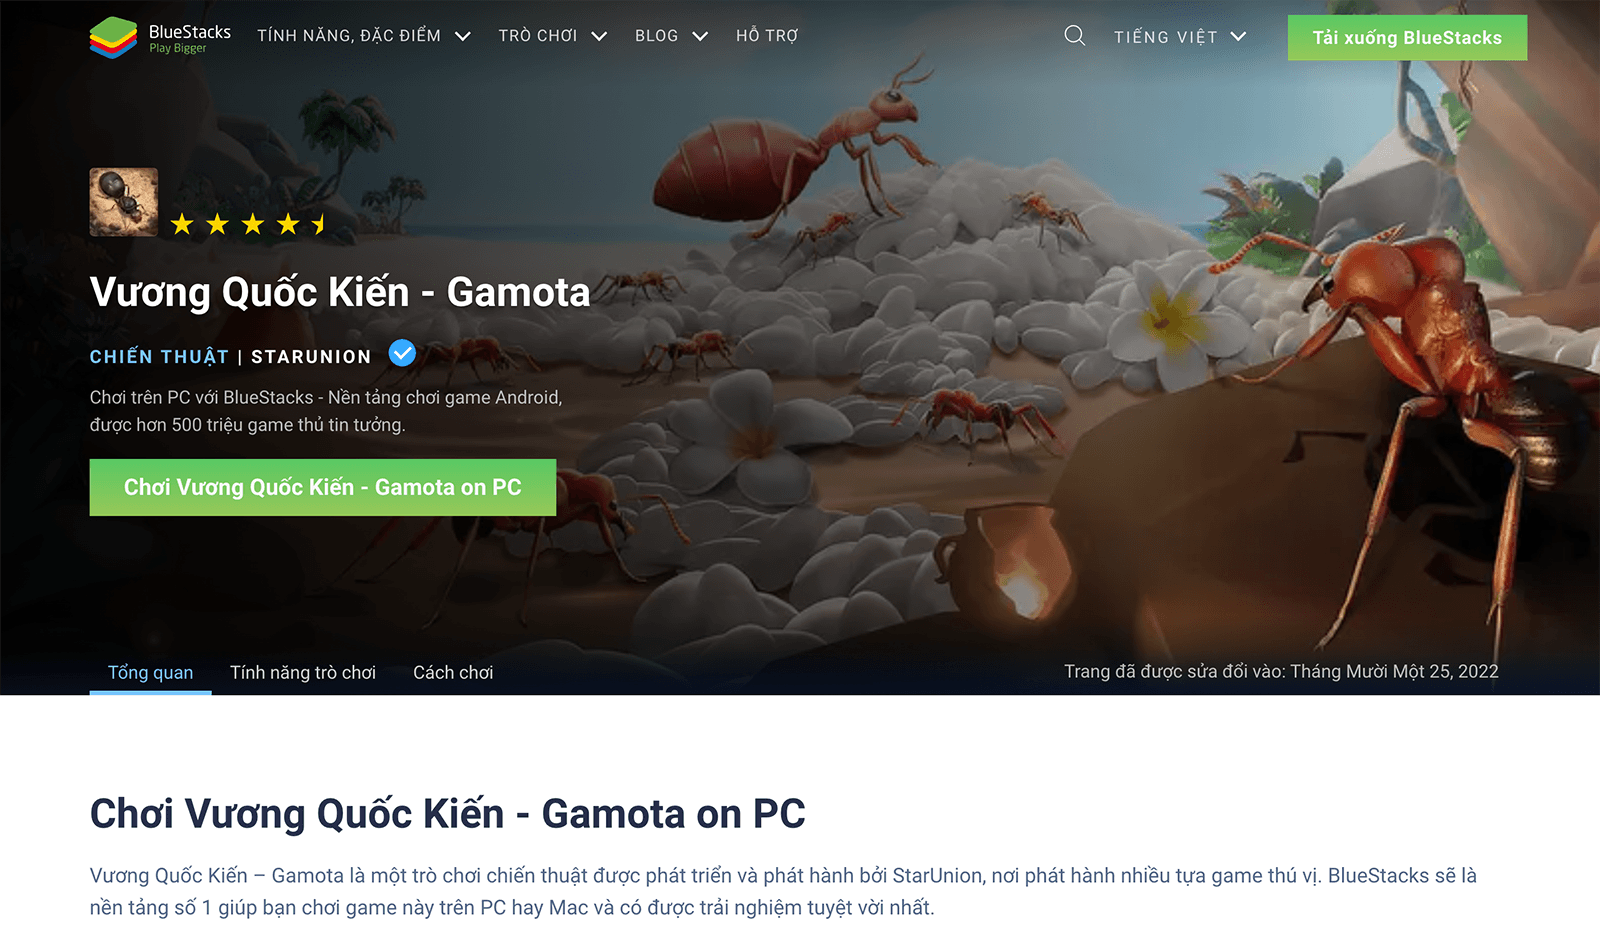 Vương Quốc Kiến - Gamota: Trải nghiệm game chiến thuật mới lạ trên PC cùng BlueStacks